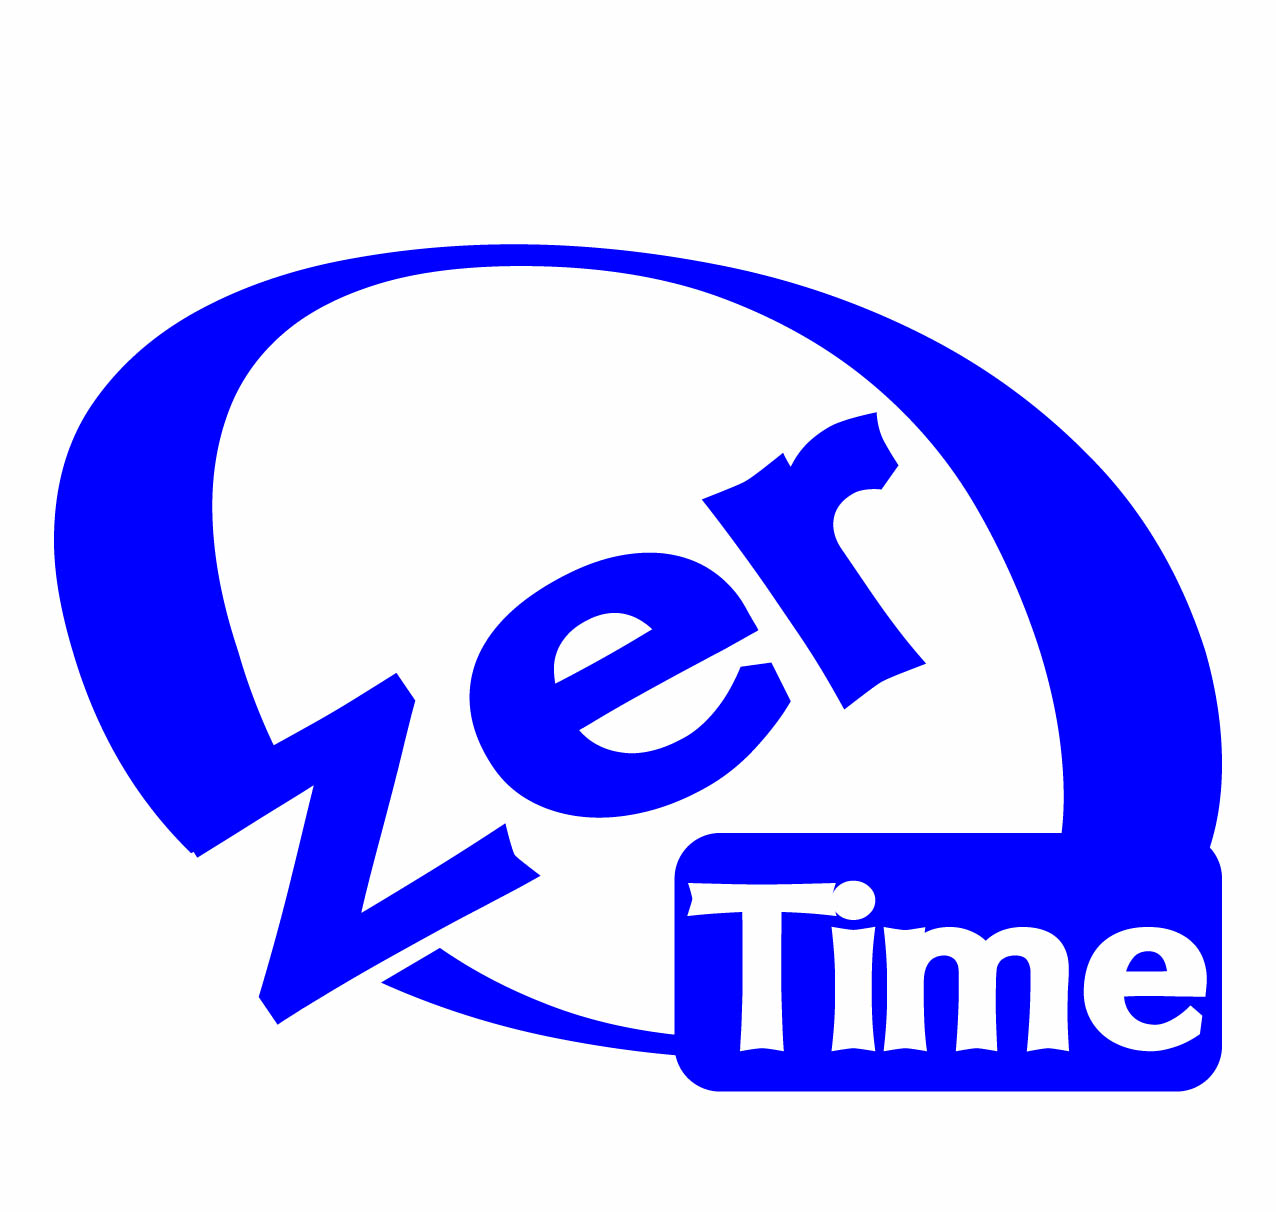 Zero time